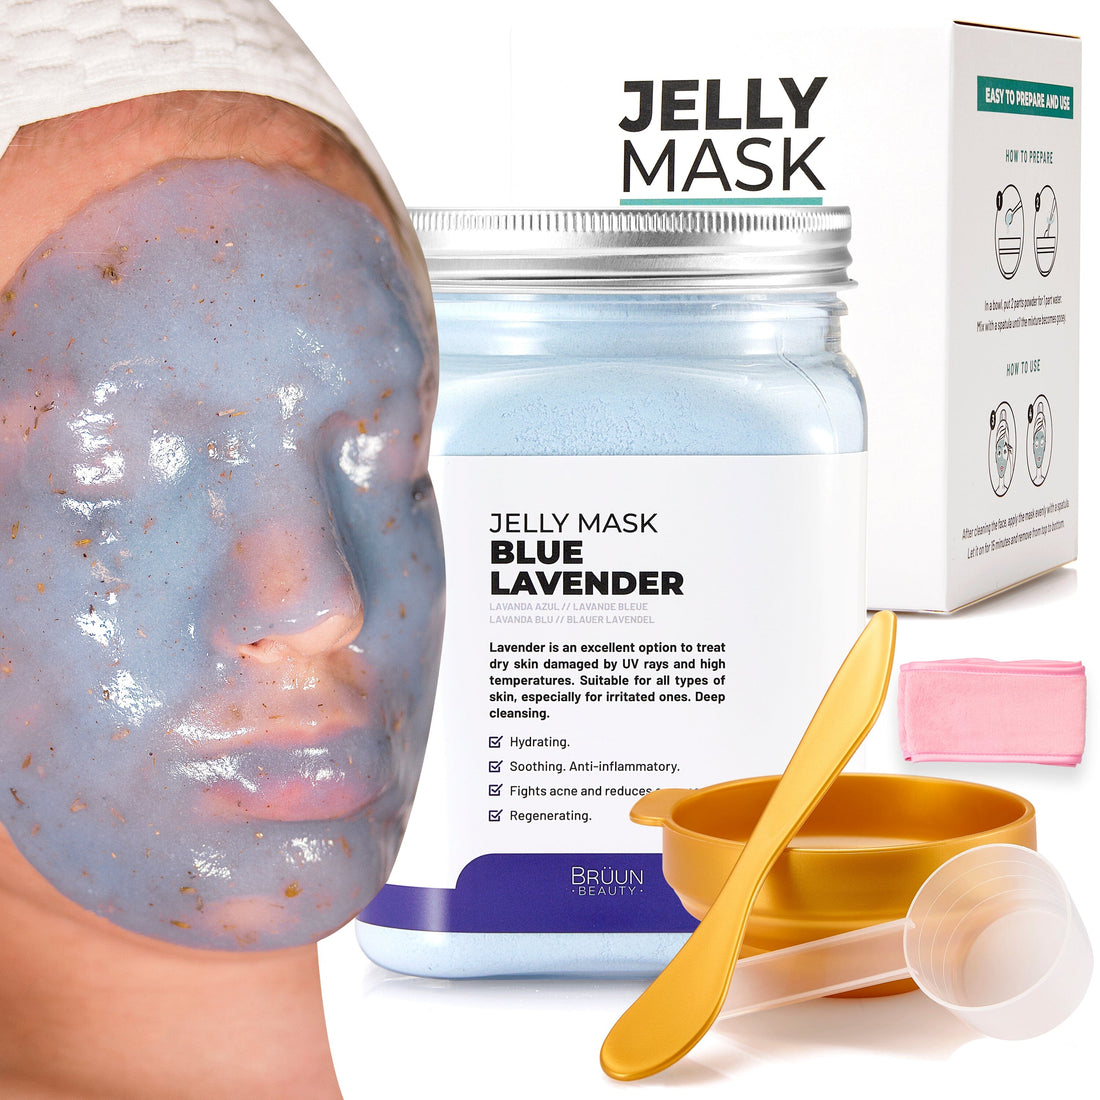 Blue Lavender Jelly Mask Jar Face Care Rubber Mask SH-Blue Lavender Jar Bruun Beauty 